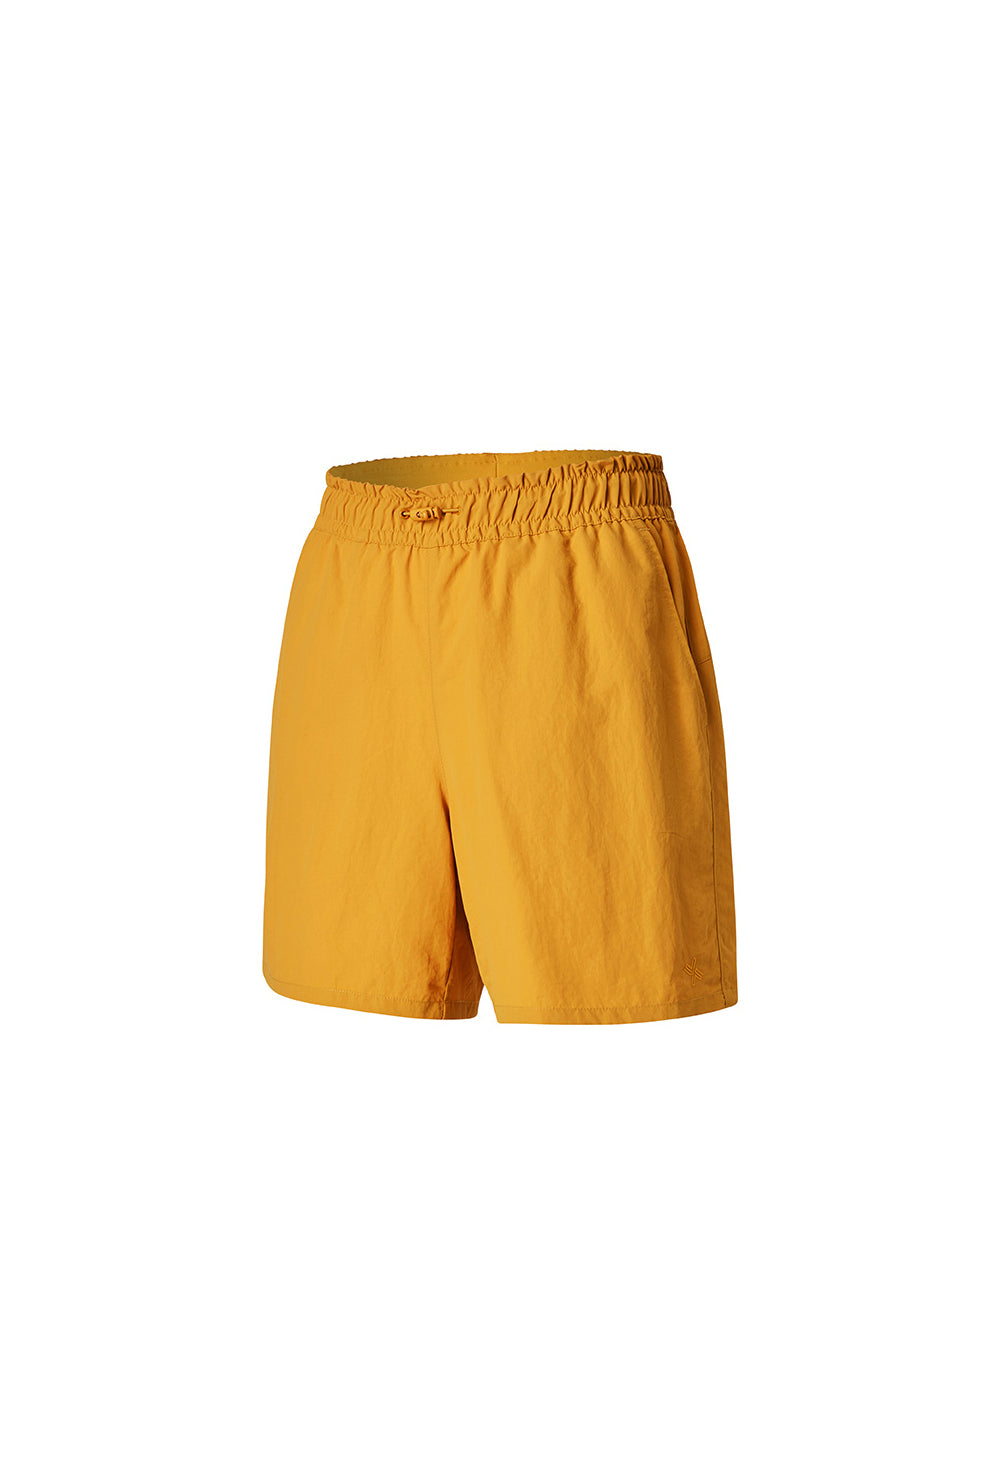 Basic Woven Half Shorts - Sunflower (Clearance)